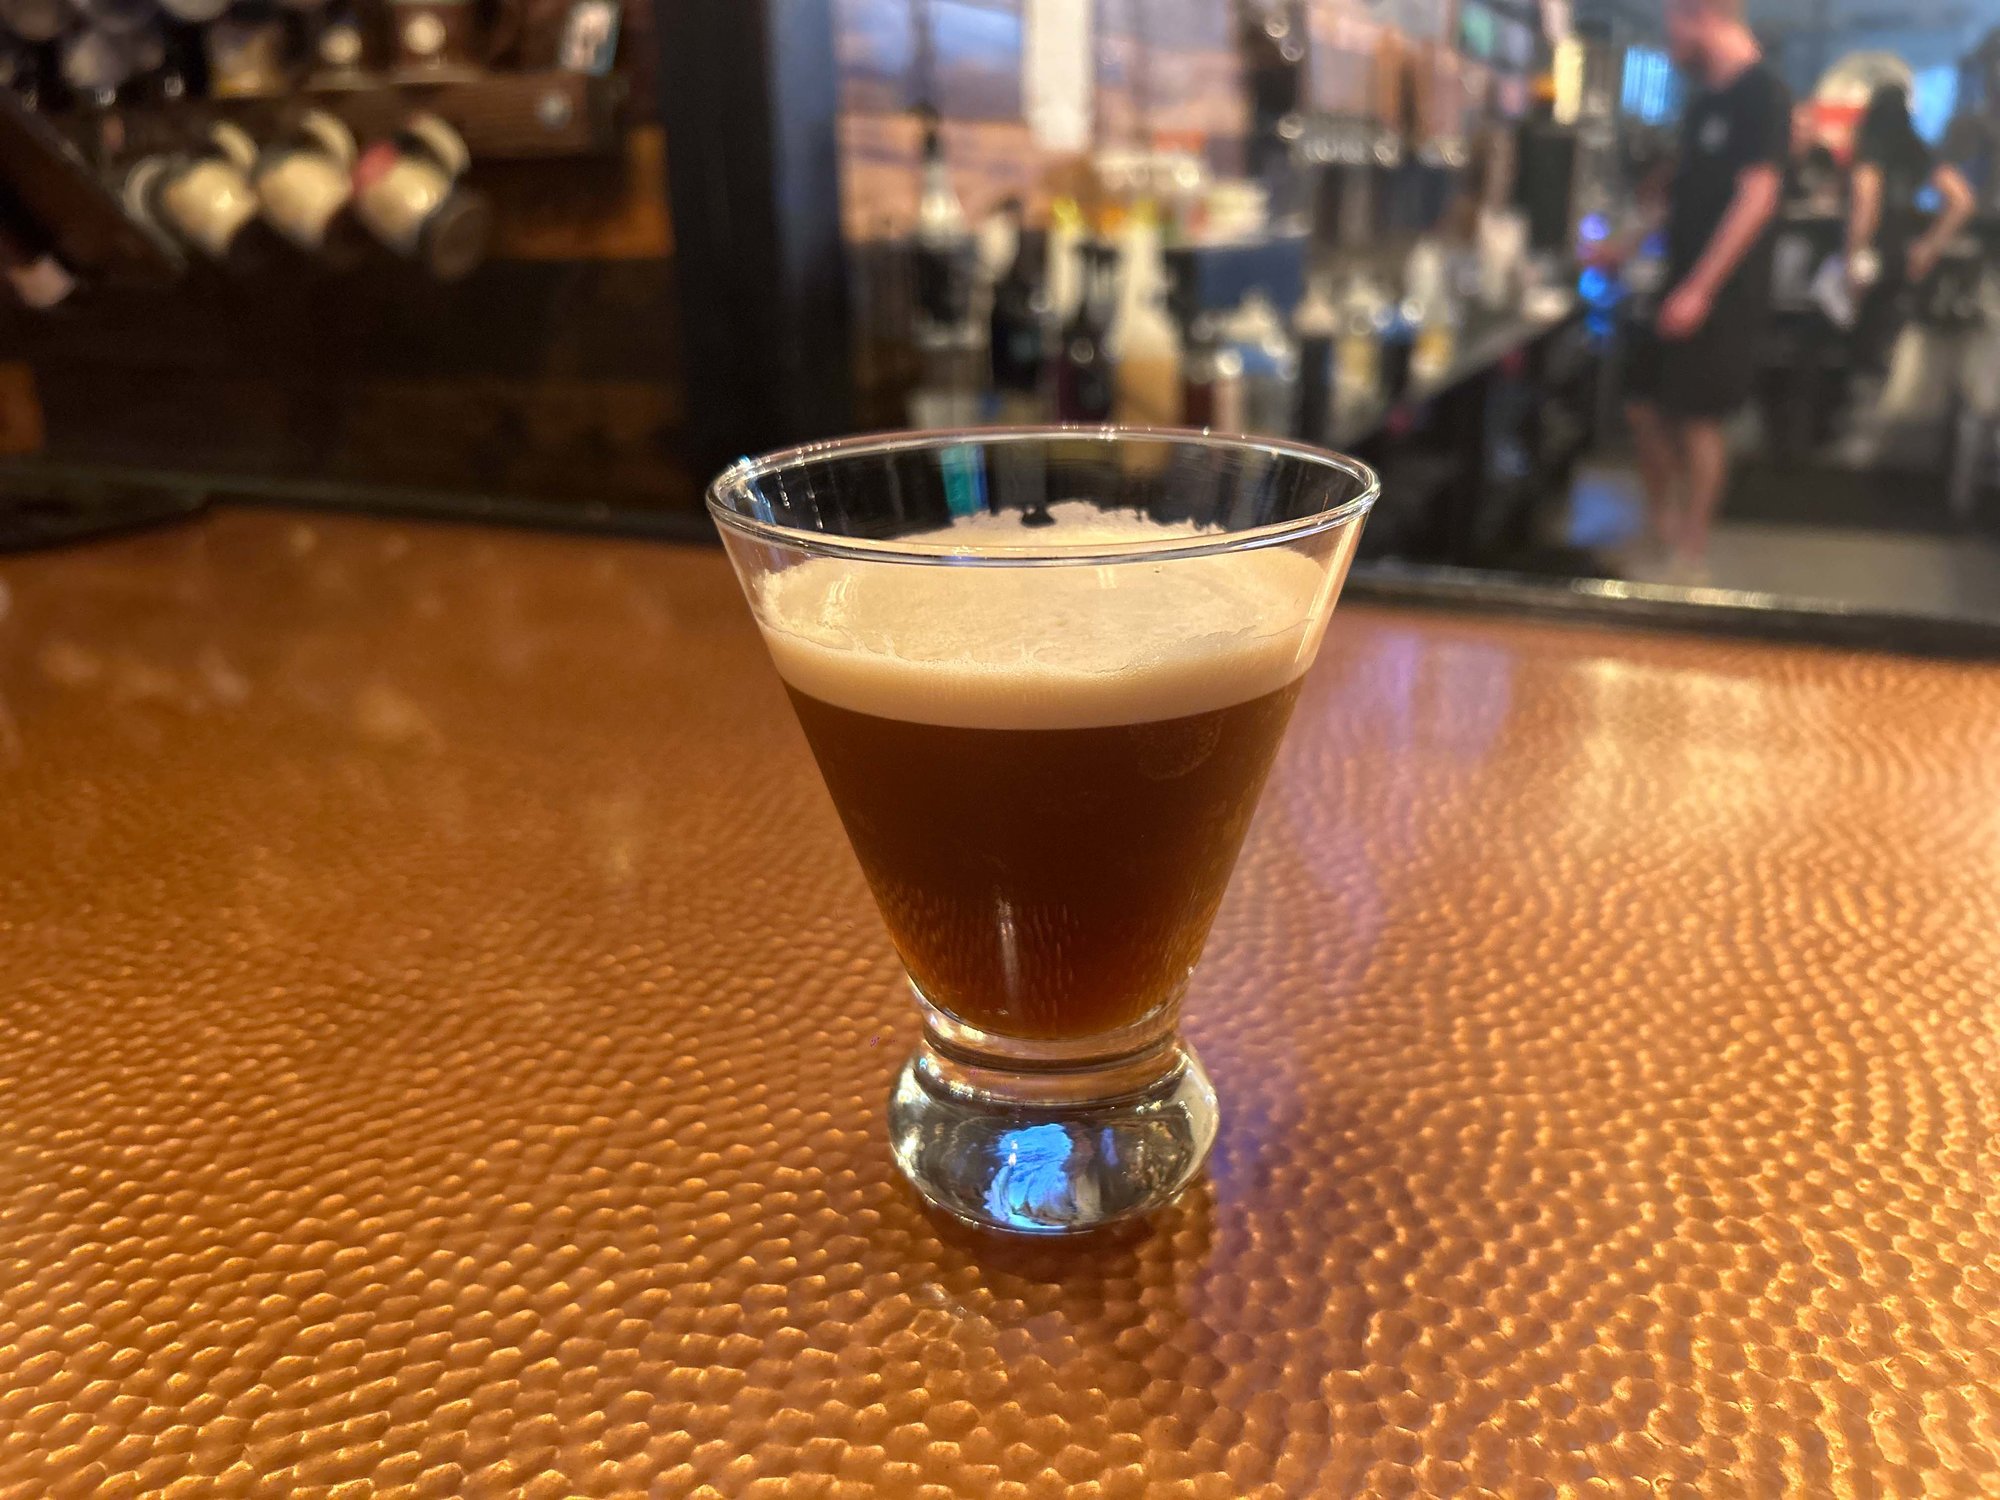 espresso martini in a glass on the bar counter